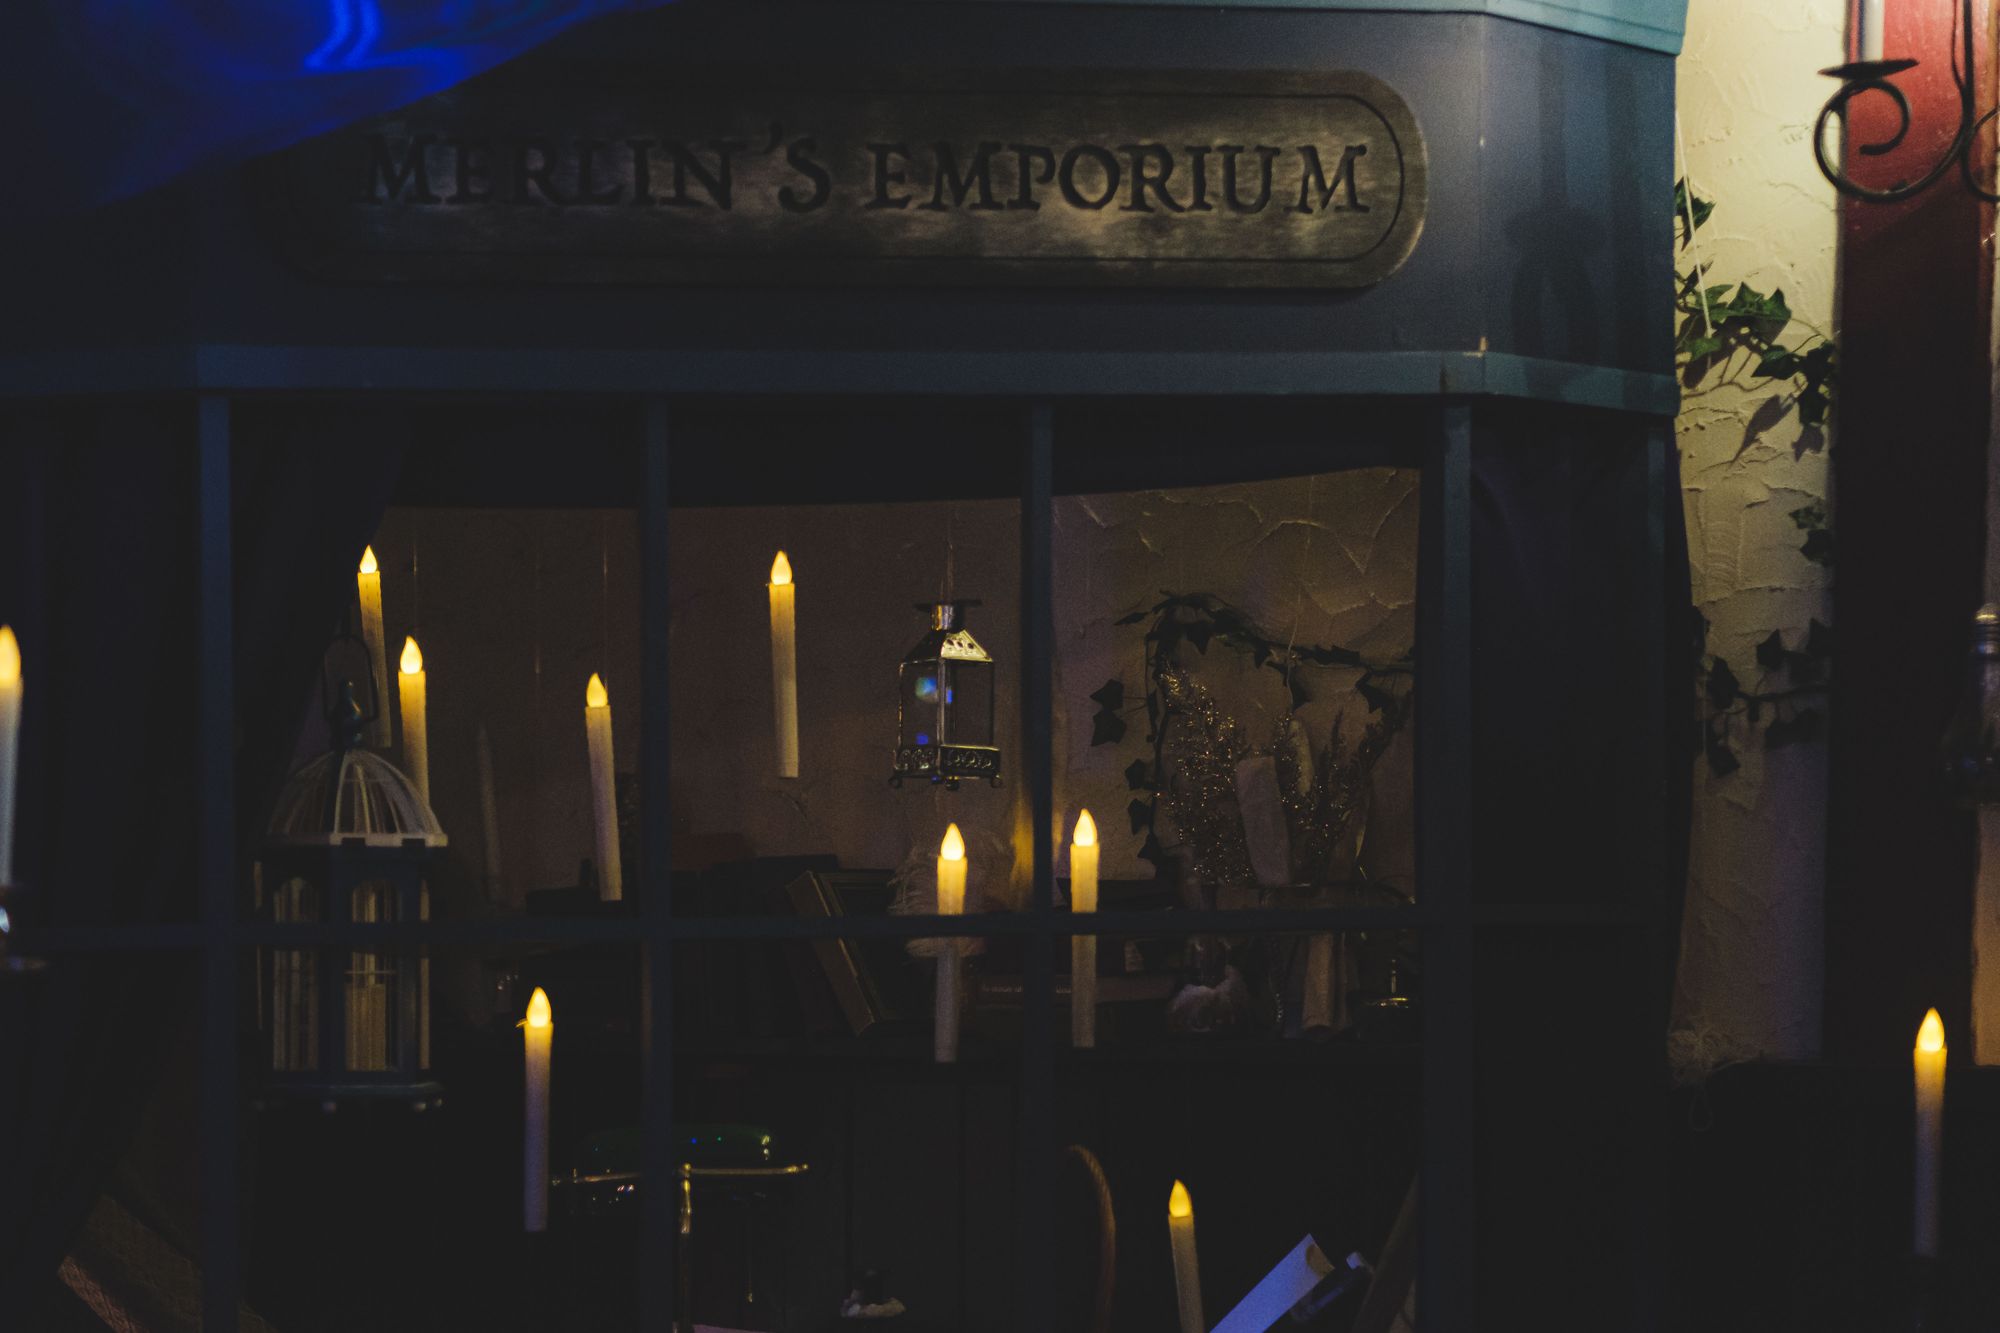 The Wizard's Den Vancouver – Merlin's Emporium